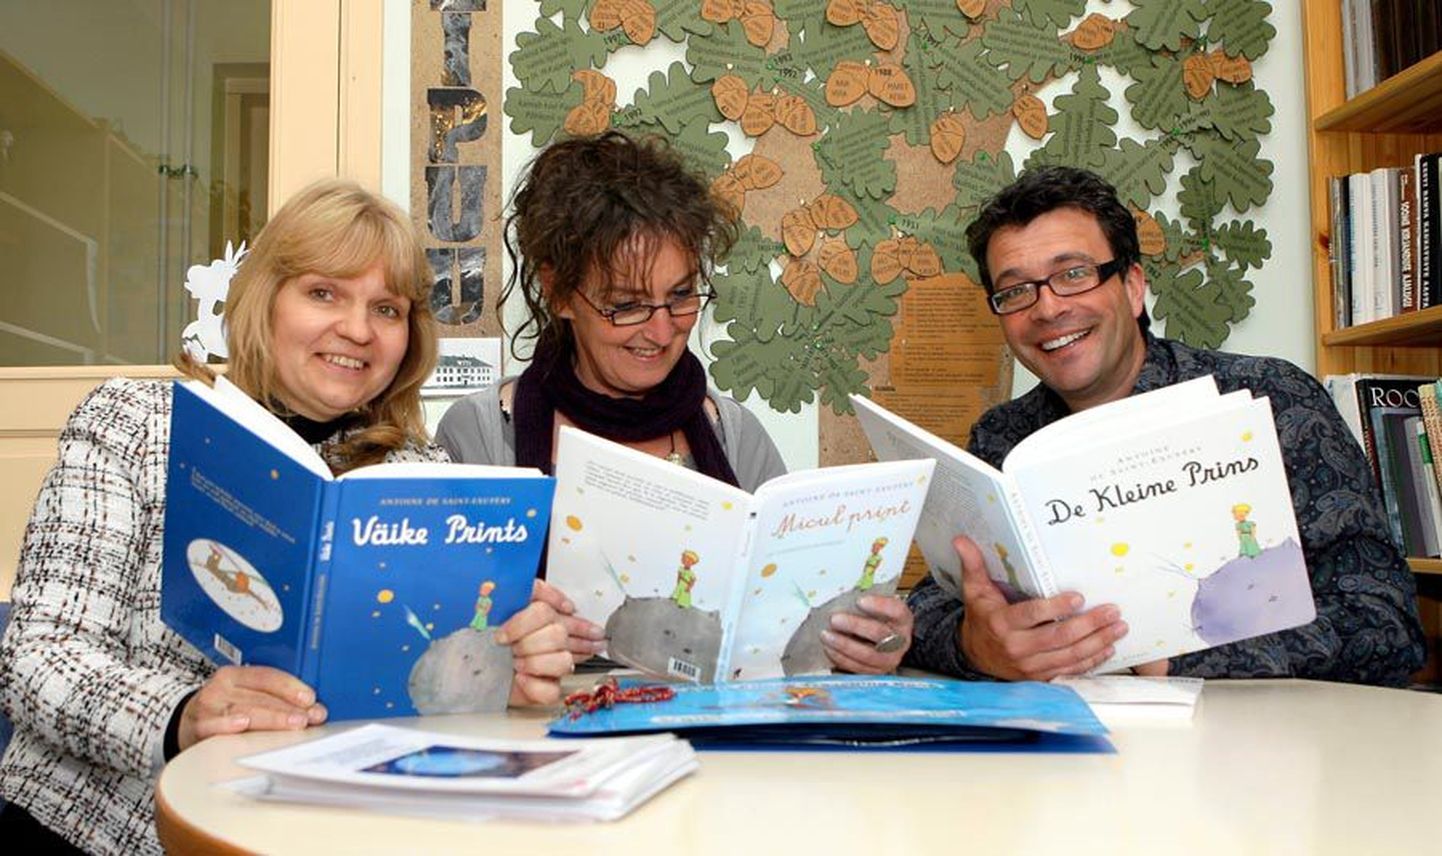 Paistu kooli Comeniuse projekti koordinaator Viive Sarv (vasakult) ning Belgia pedagoogid Anne Dierickx ja Joost Vercaemst uurivad eri keeltes välja antud «Väikse printsi» raamatuid, mis on nende ühise tegutsemise alus.